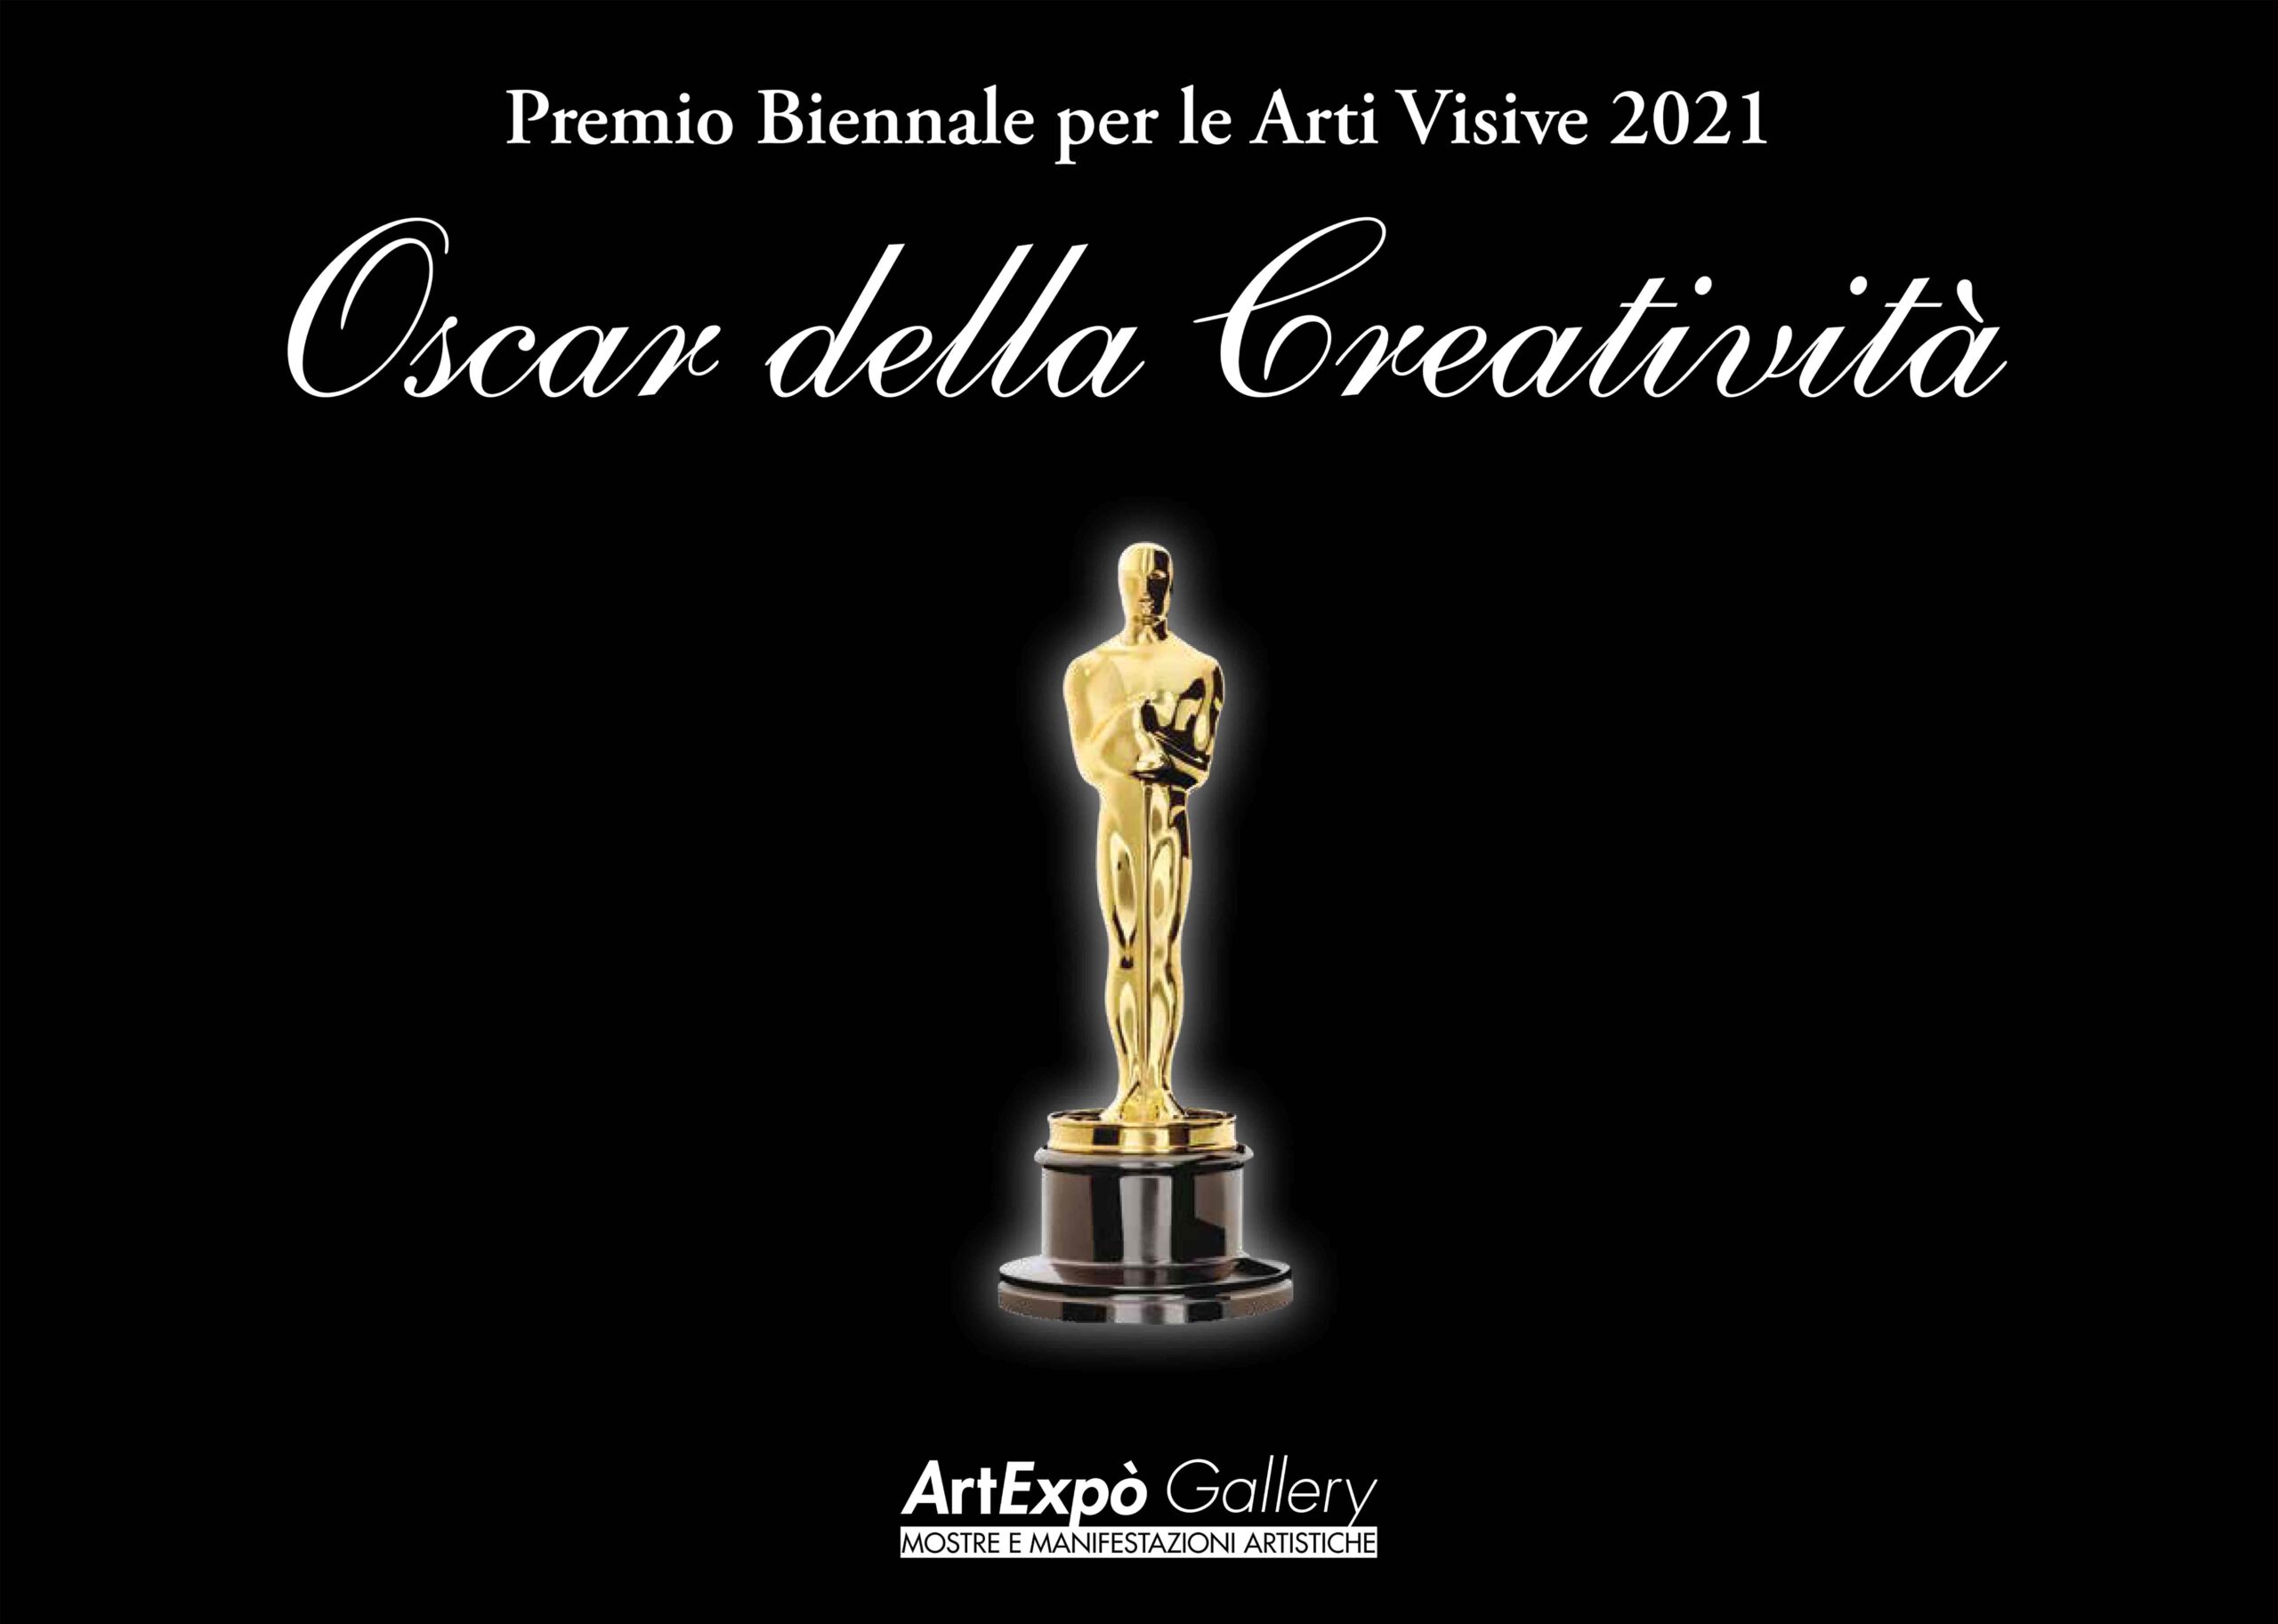 “Oscar della Creatività 2021” Premio biennale per le Arti Visive